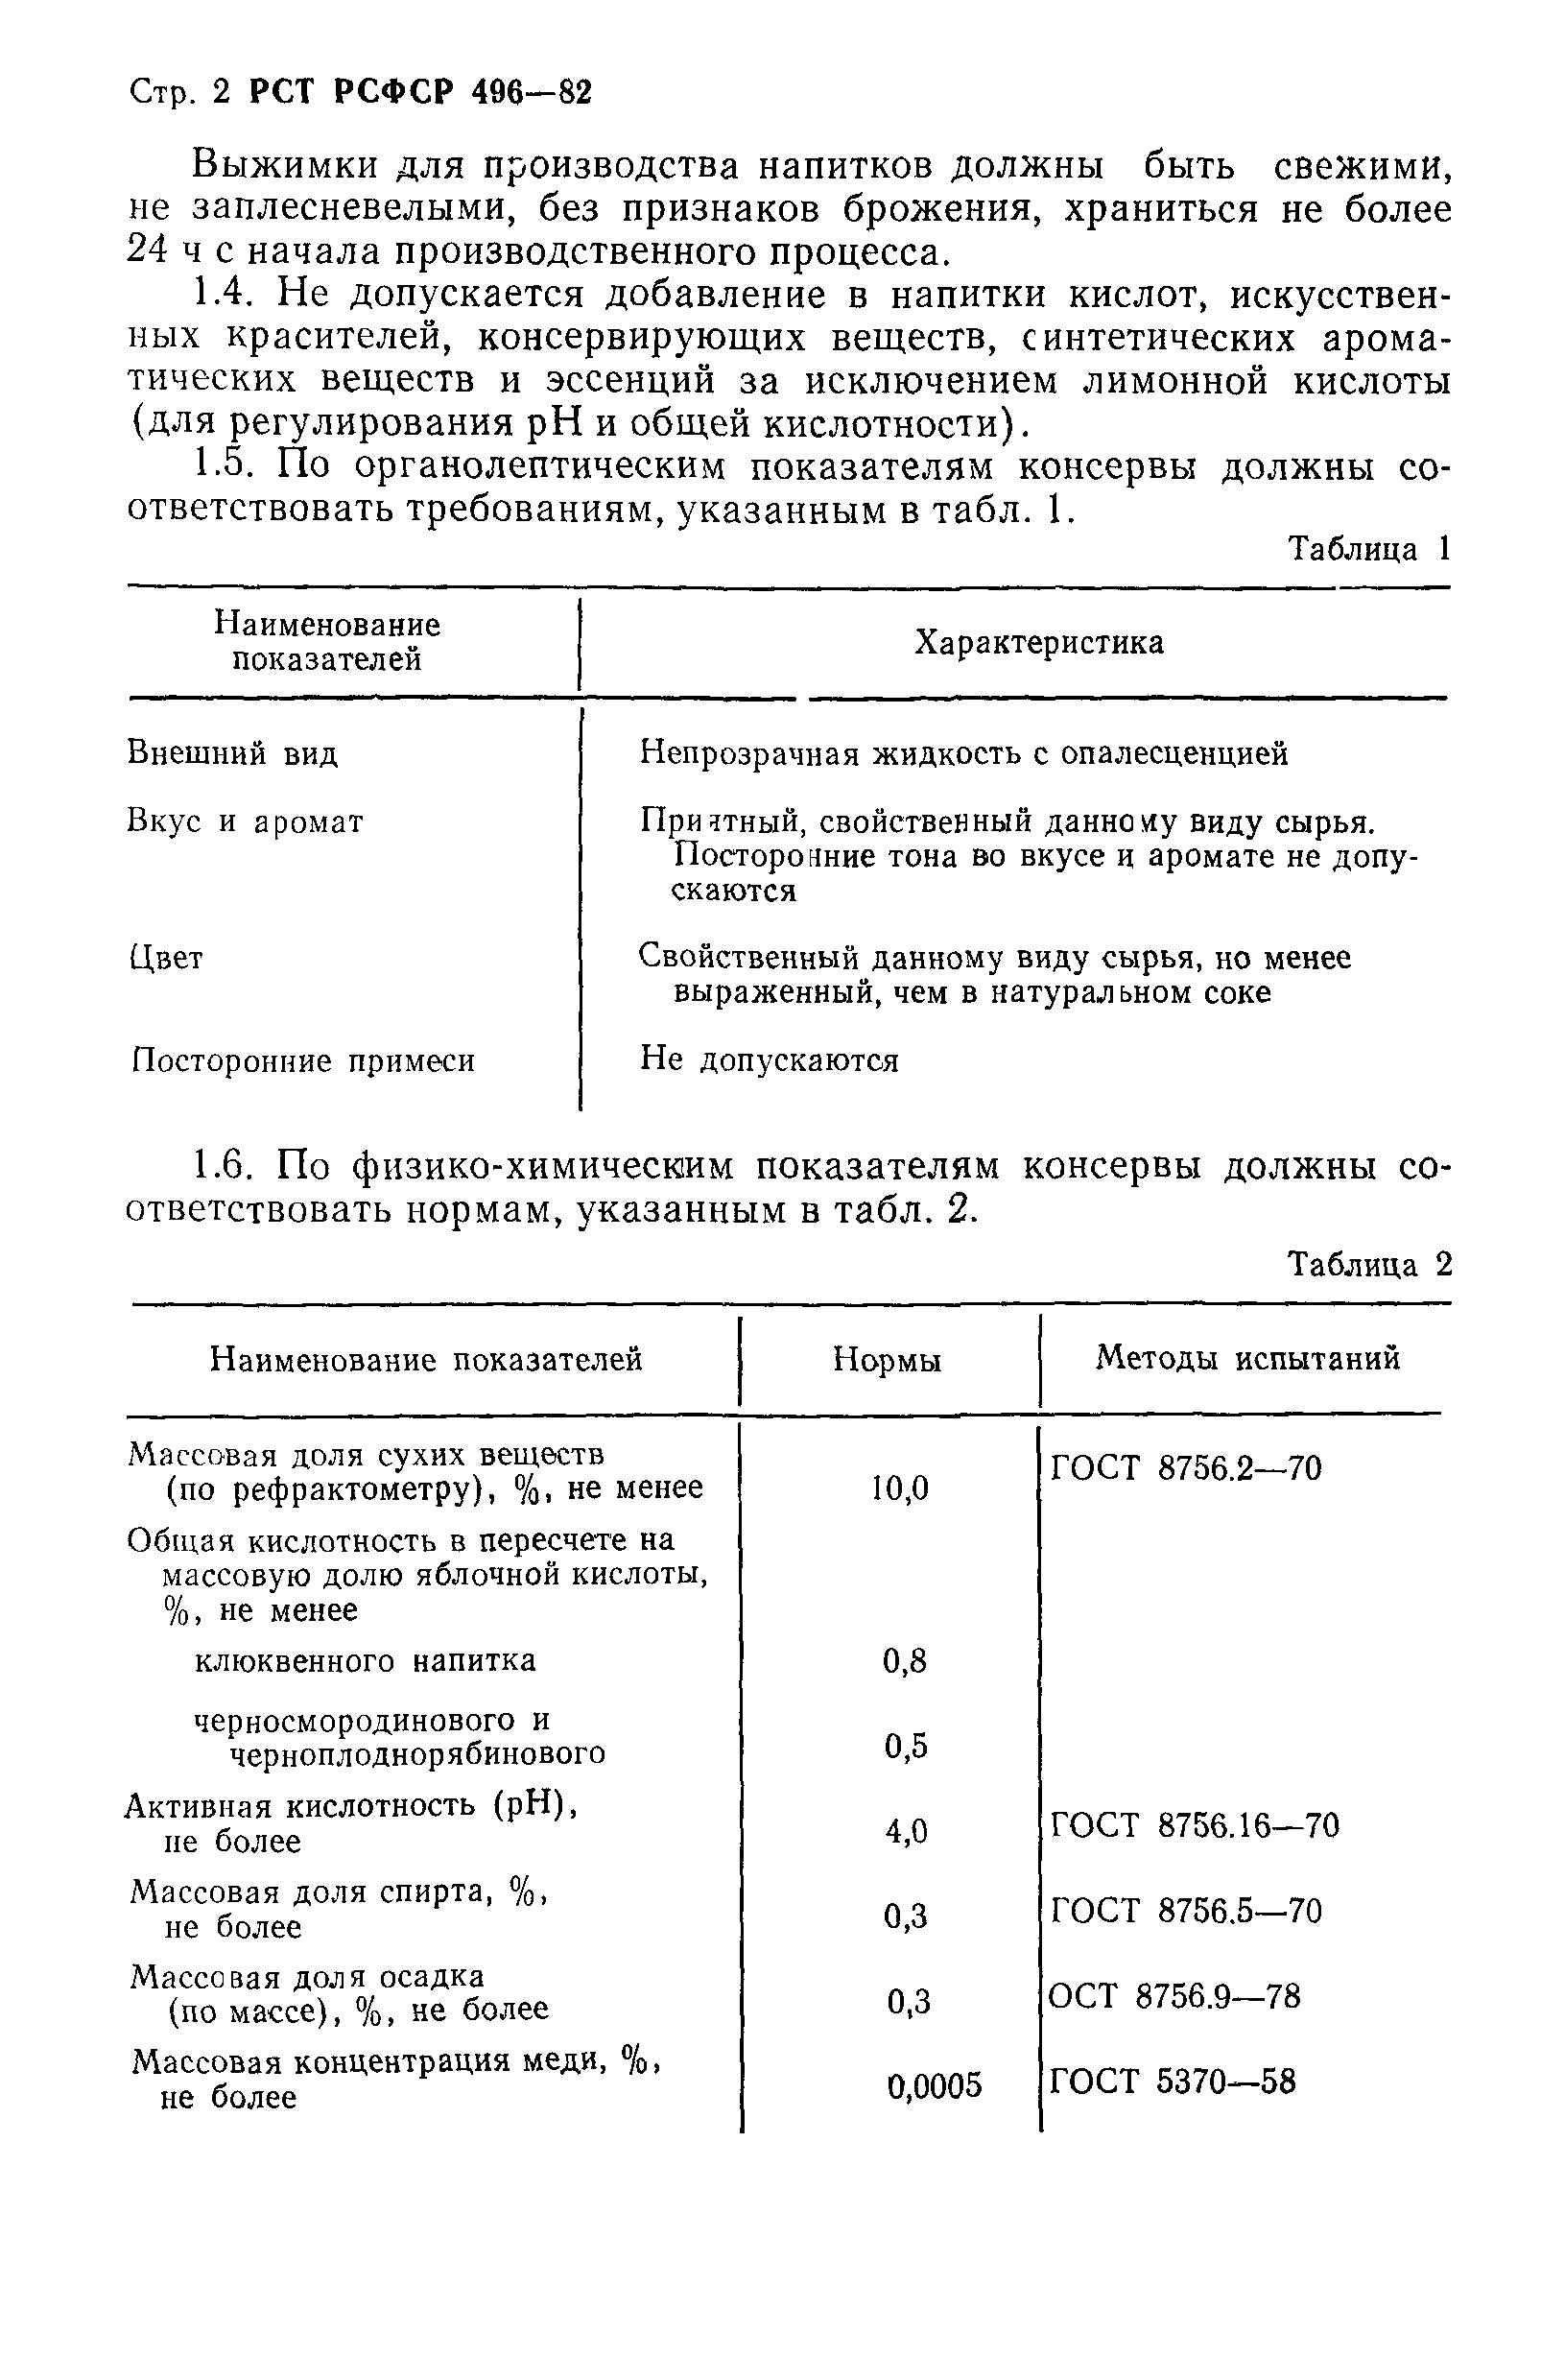 РСТ РСФСР 673-82